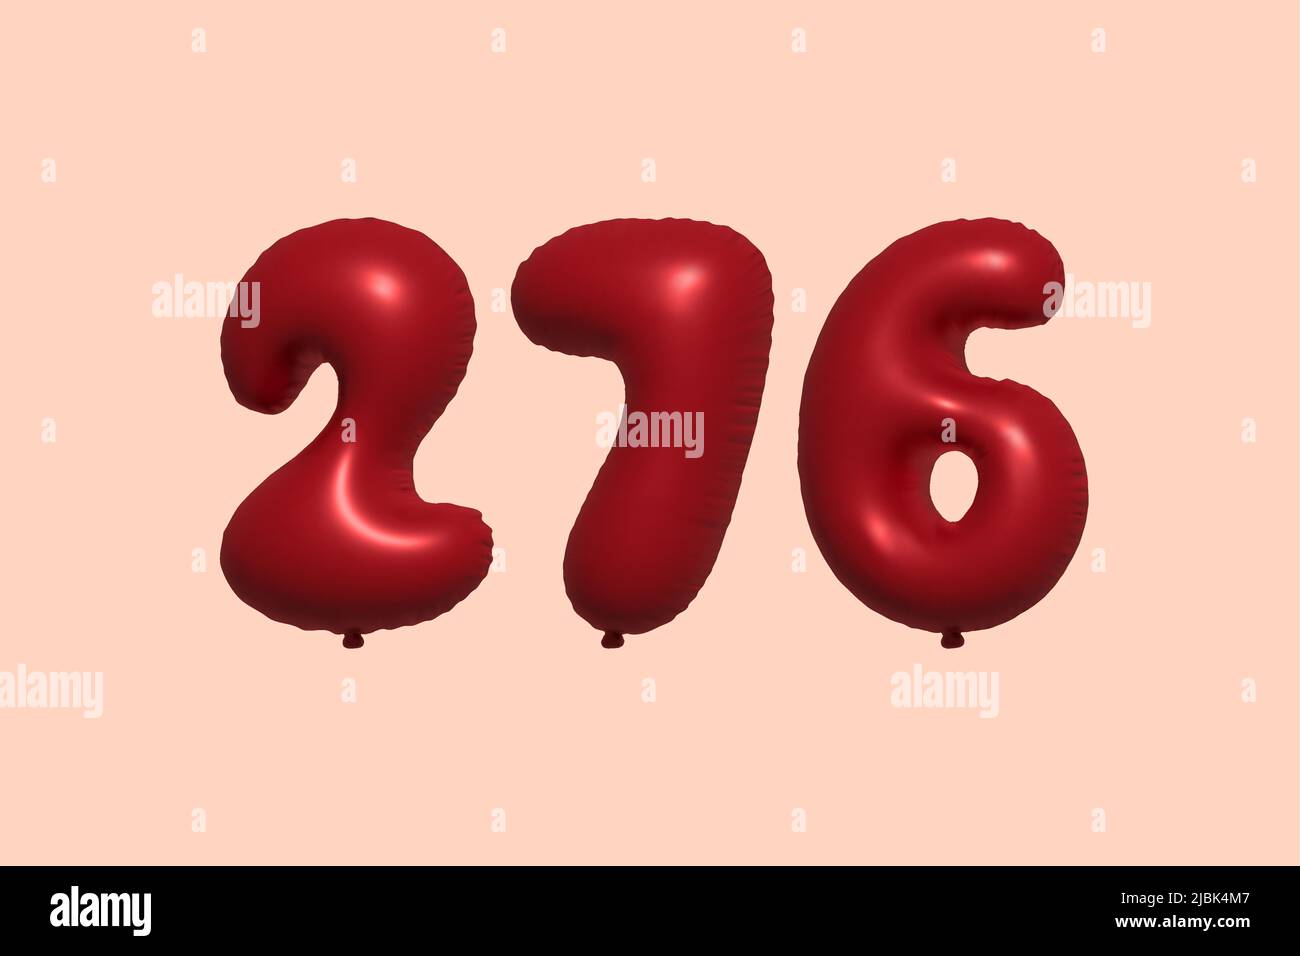 palloncino in numero 276 3d realizzato con rendering realistico di palloncino in aria metallica 3d. 3D palloncini di elio rosso per la vendita decorazione Party compleanno, celebrare anniversario, Vacanza nuziale. Illustrazione vettoriale Illustrazione Vettoriale